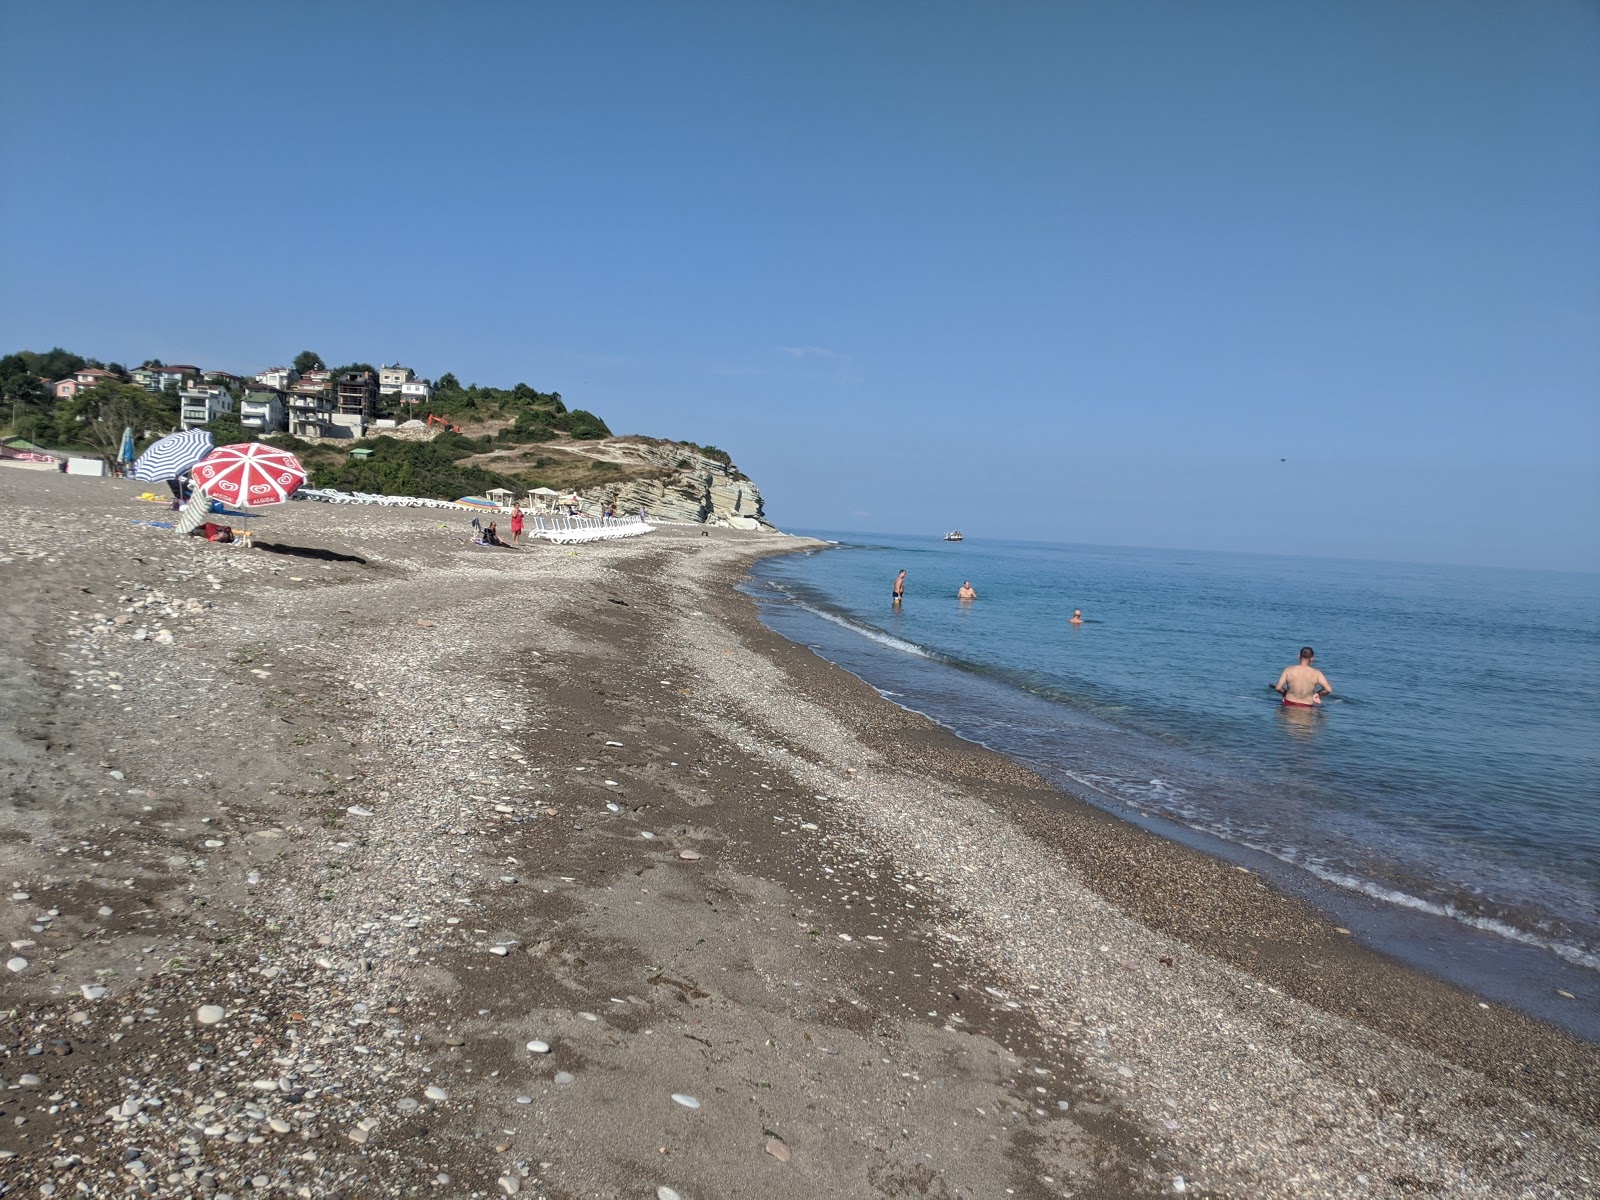 Degirmenagzi Plajı'in fotoğrafı gri kum ve çakıl yüzey ile